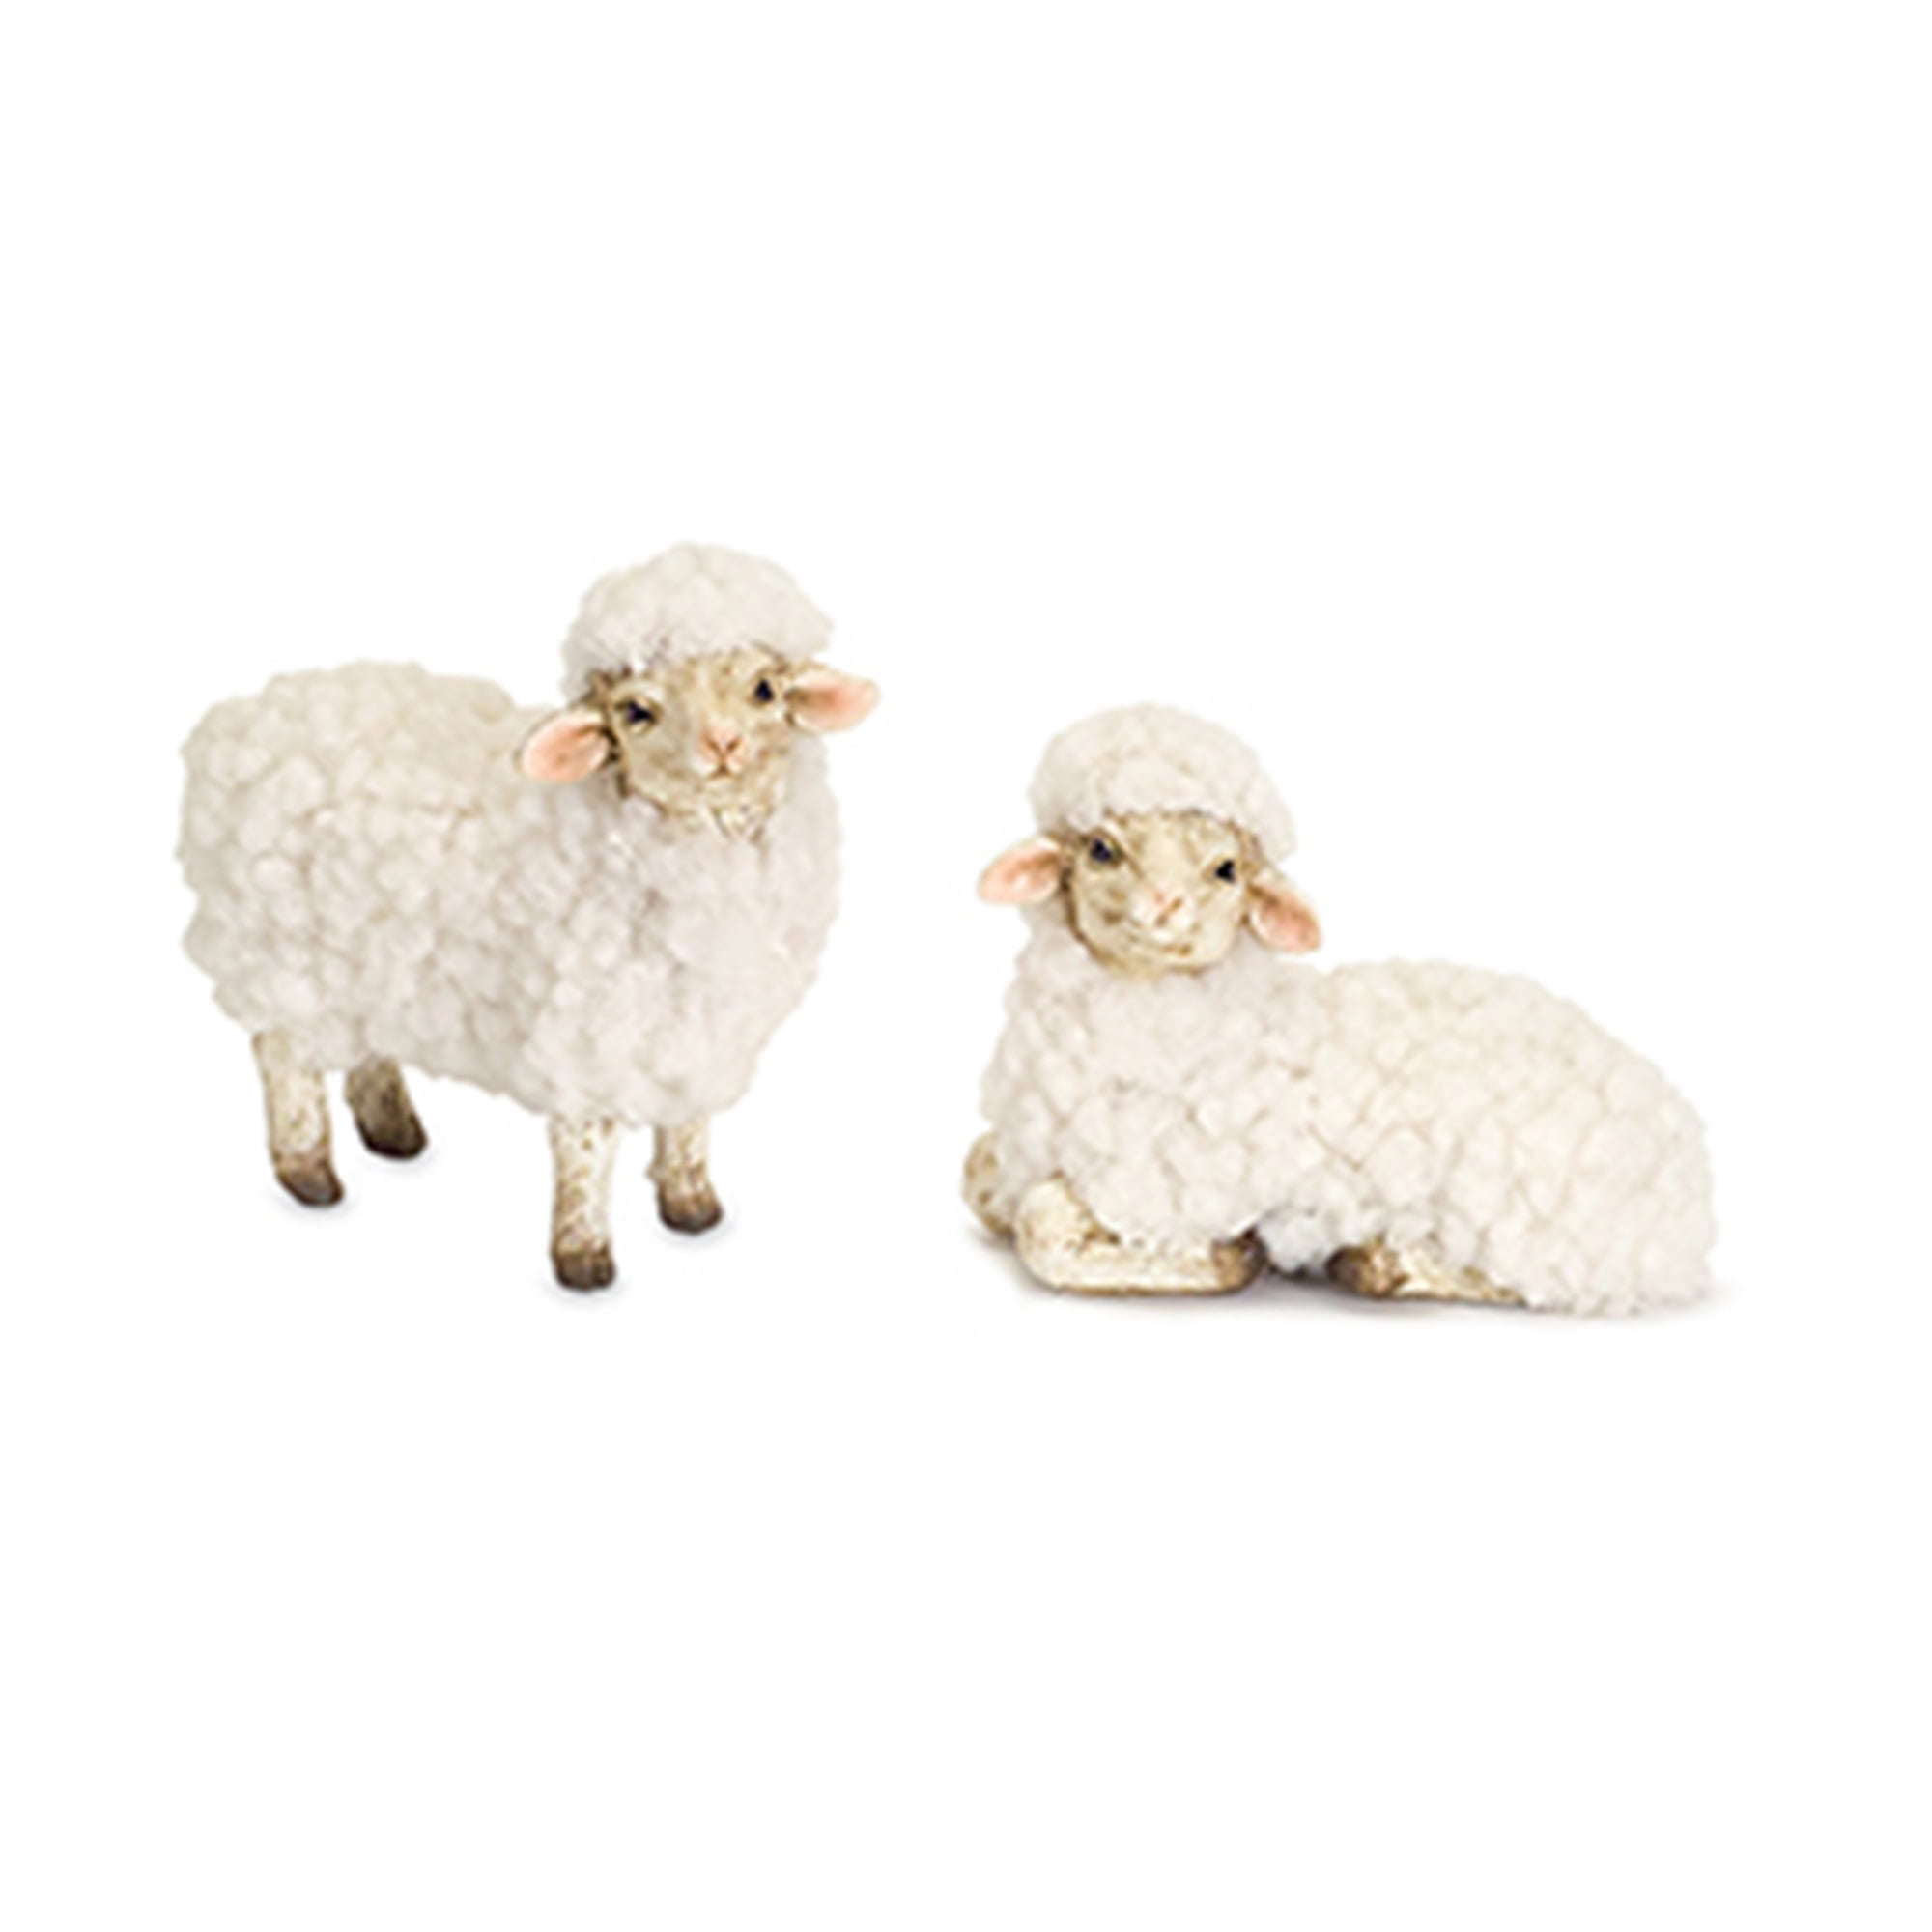 Sheep (Set of 8) 3"H, 3.5"H Resin